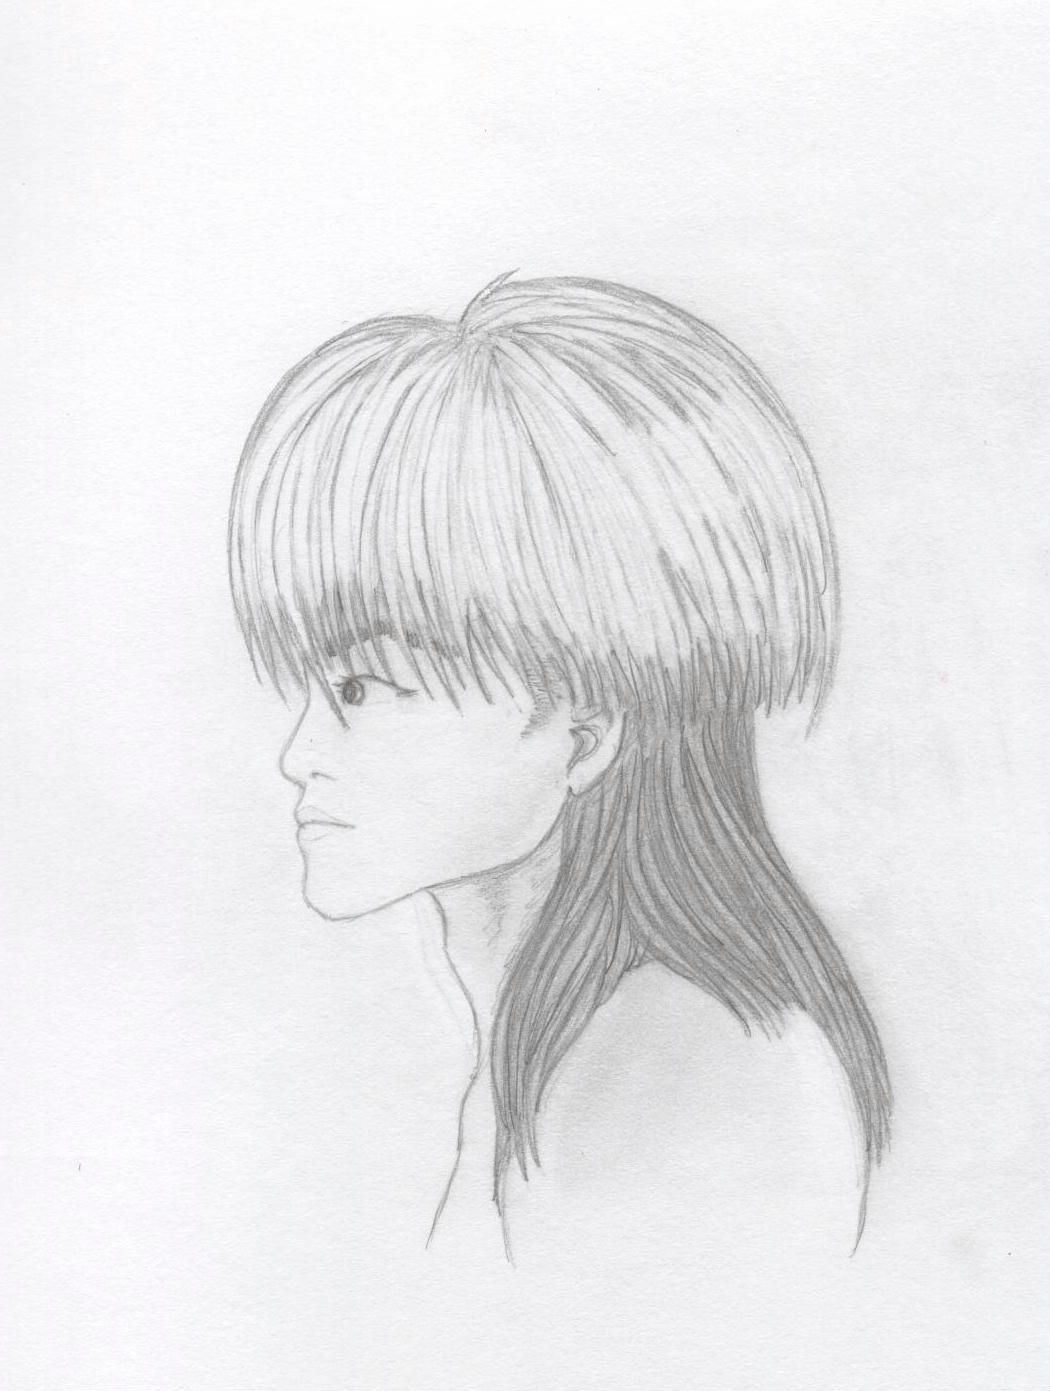 Makoto profile WIP by Ran_The_Hyena